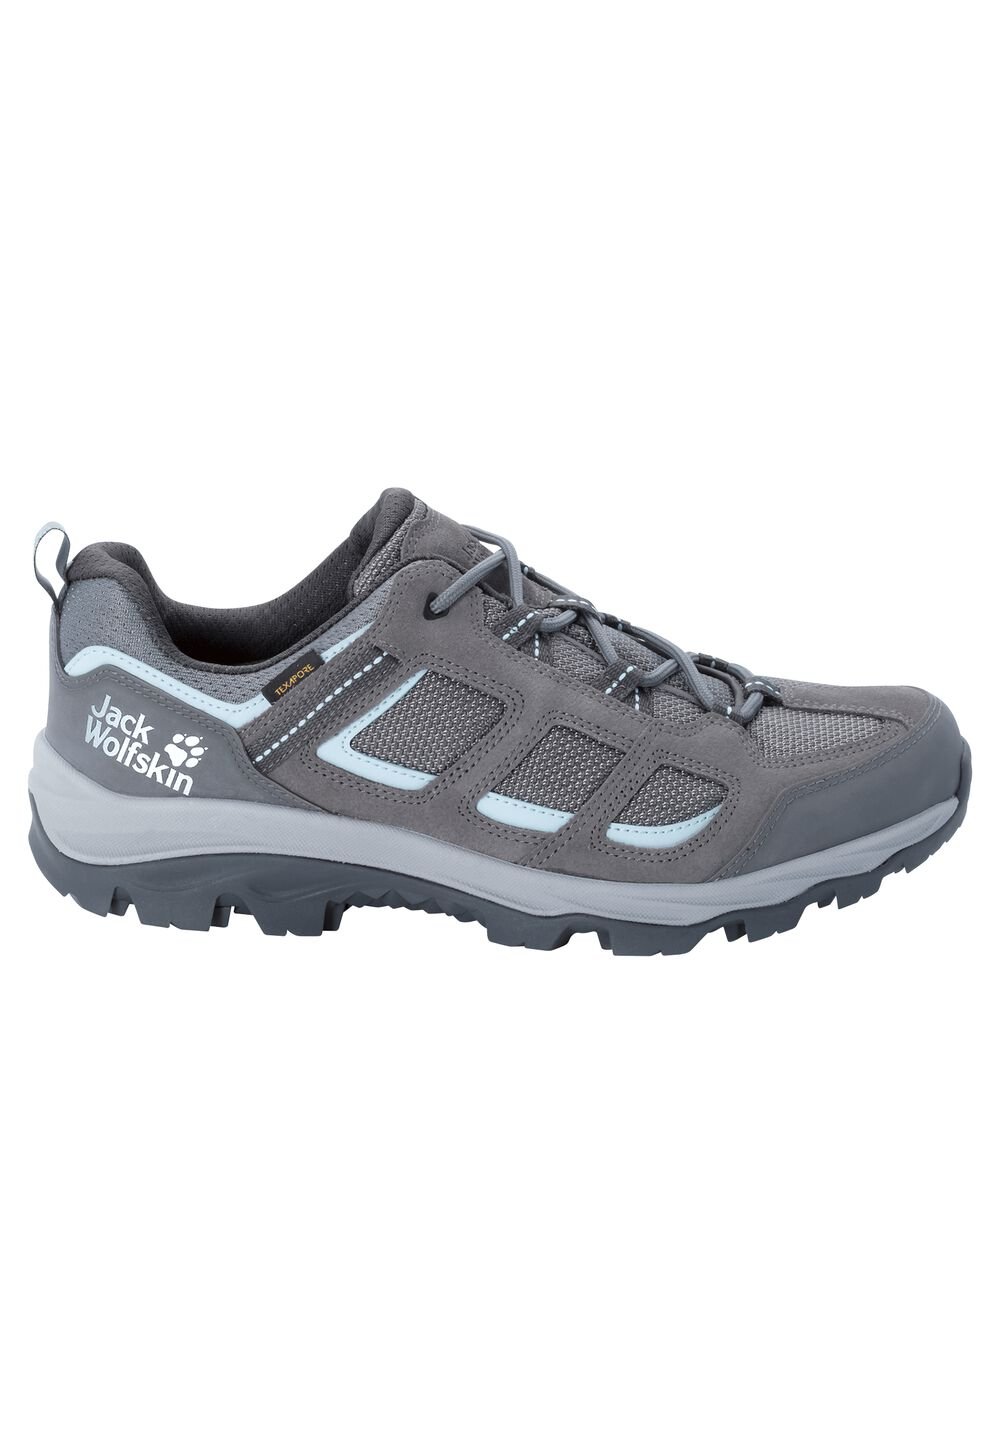 Chaussures de randonnée imperméables femmes Vojo 3 Texapore Low Women 5,5 gris tarmac grey / light b